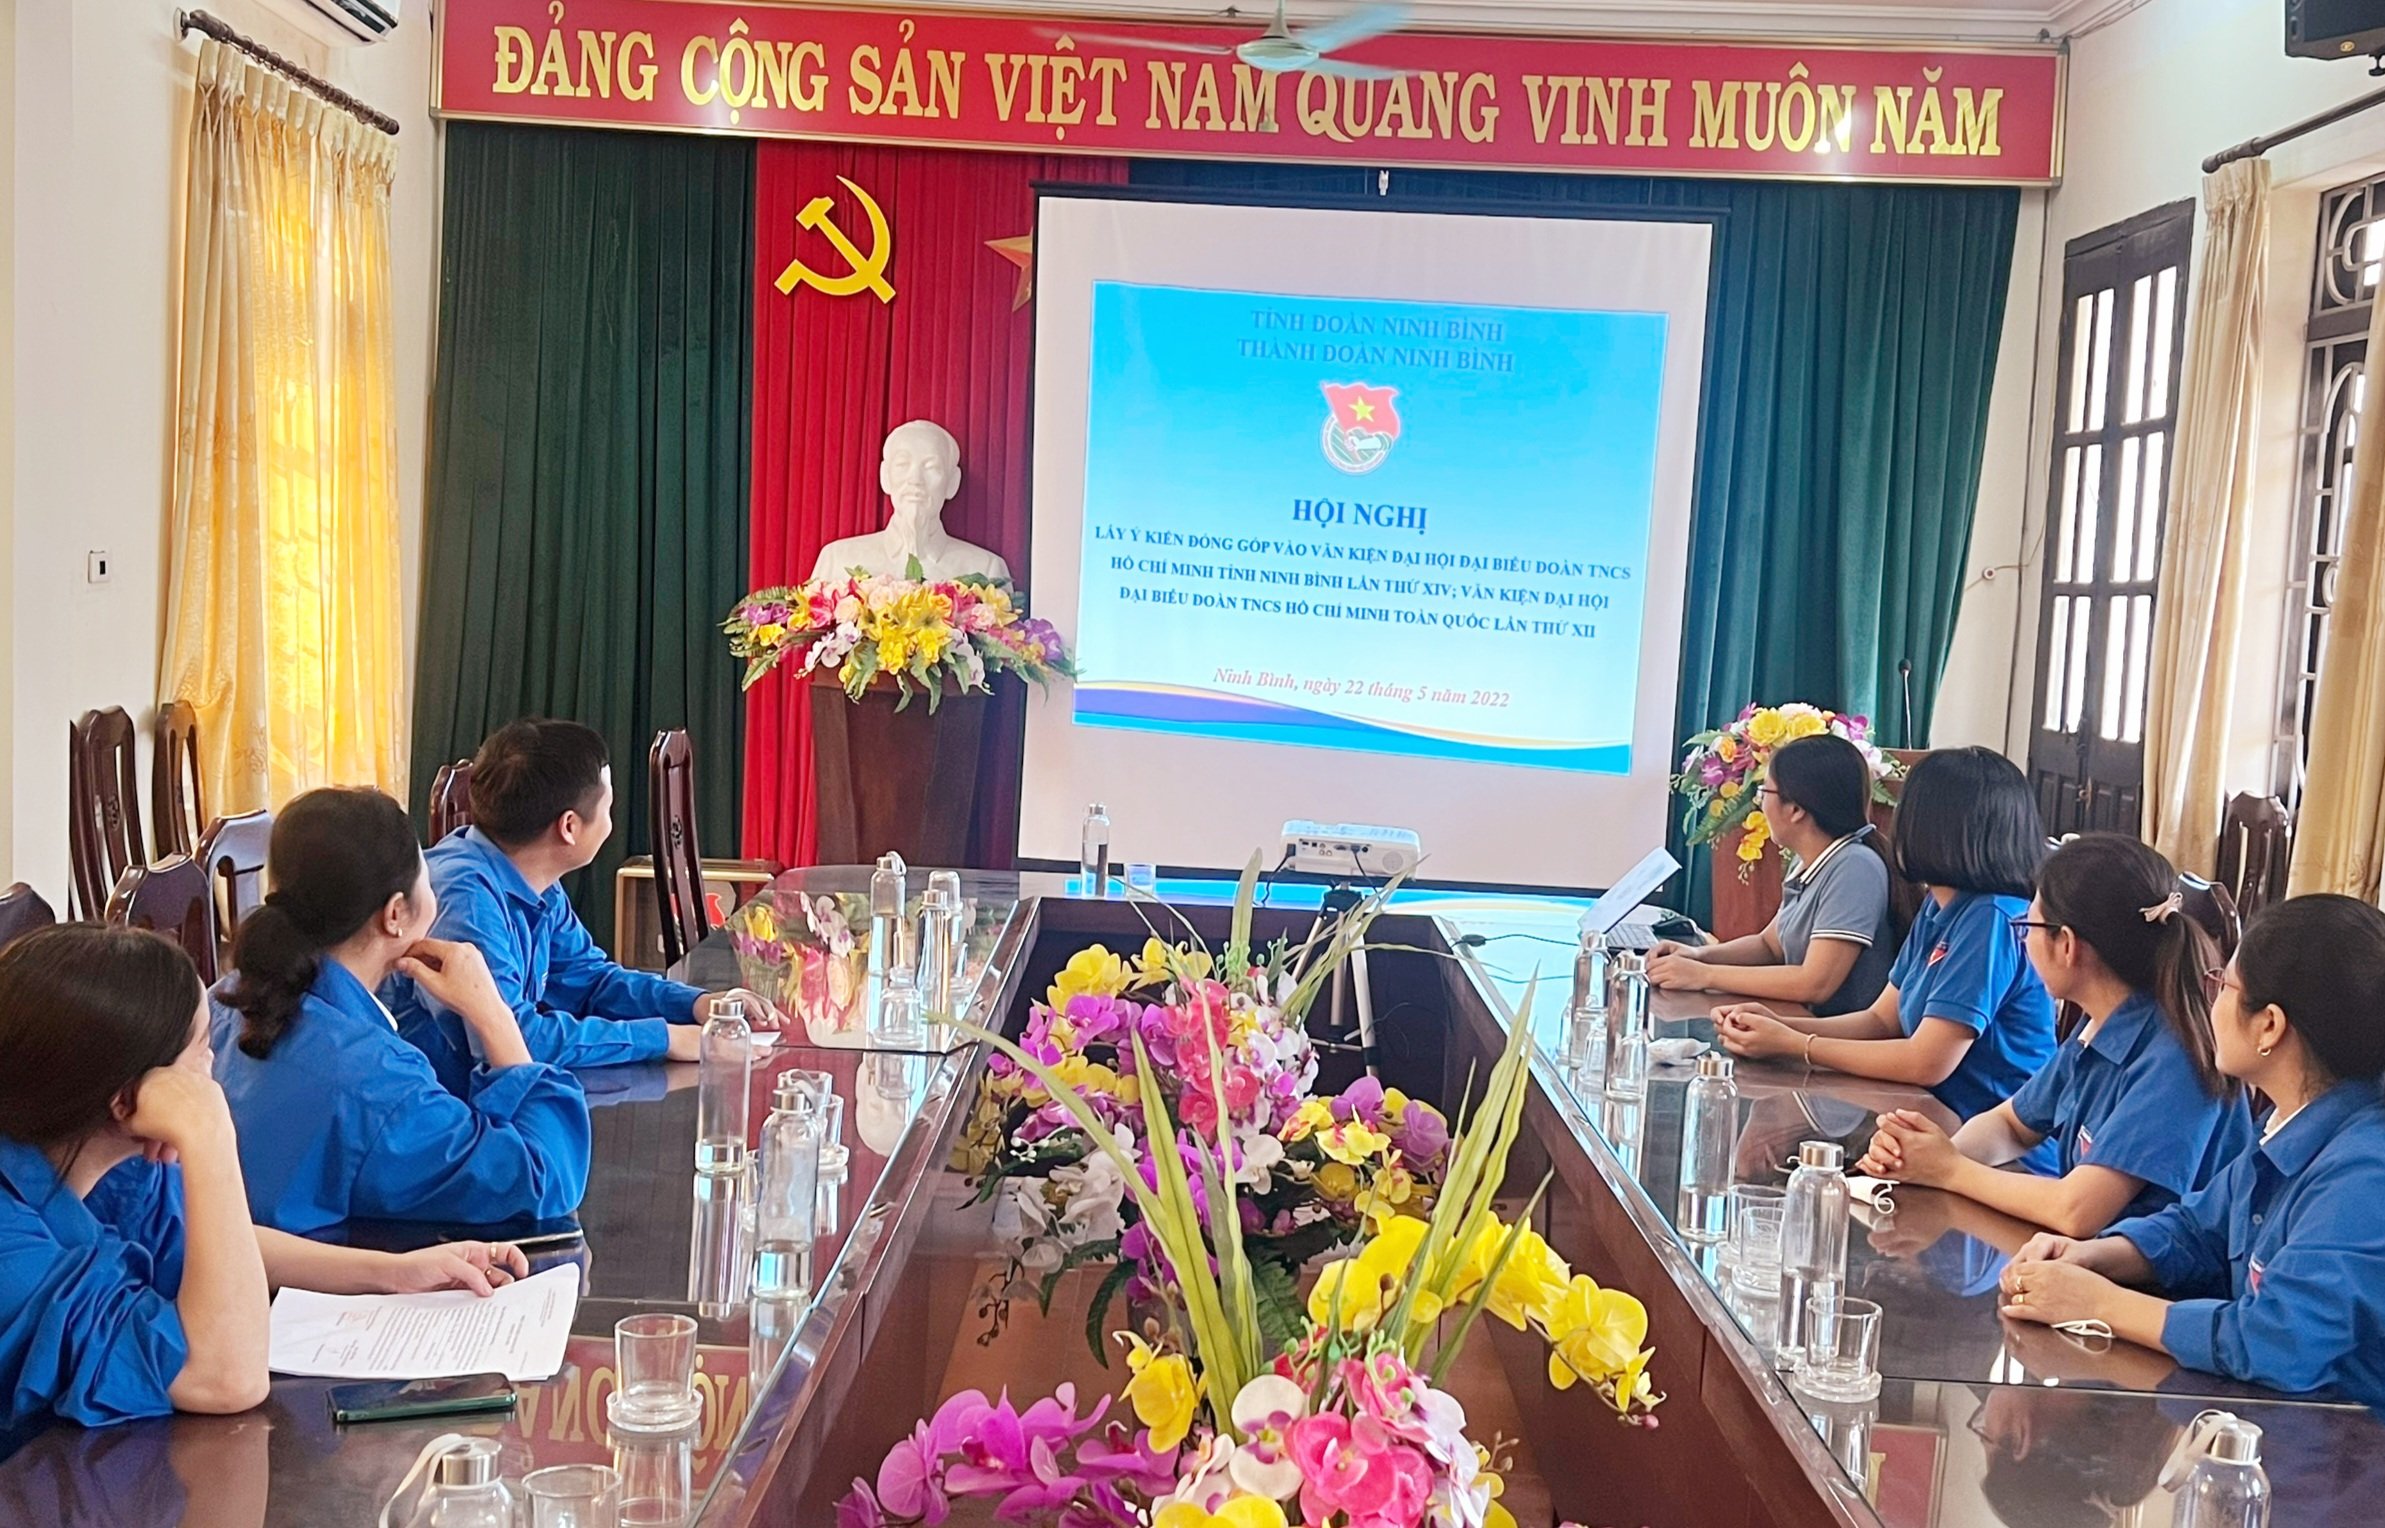 ĐVTN thành phố Ninh Bình đóng góp nhiều ý kiến vào dự thảo văn kiện đại hội Đại hội Đoàn cấp trên